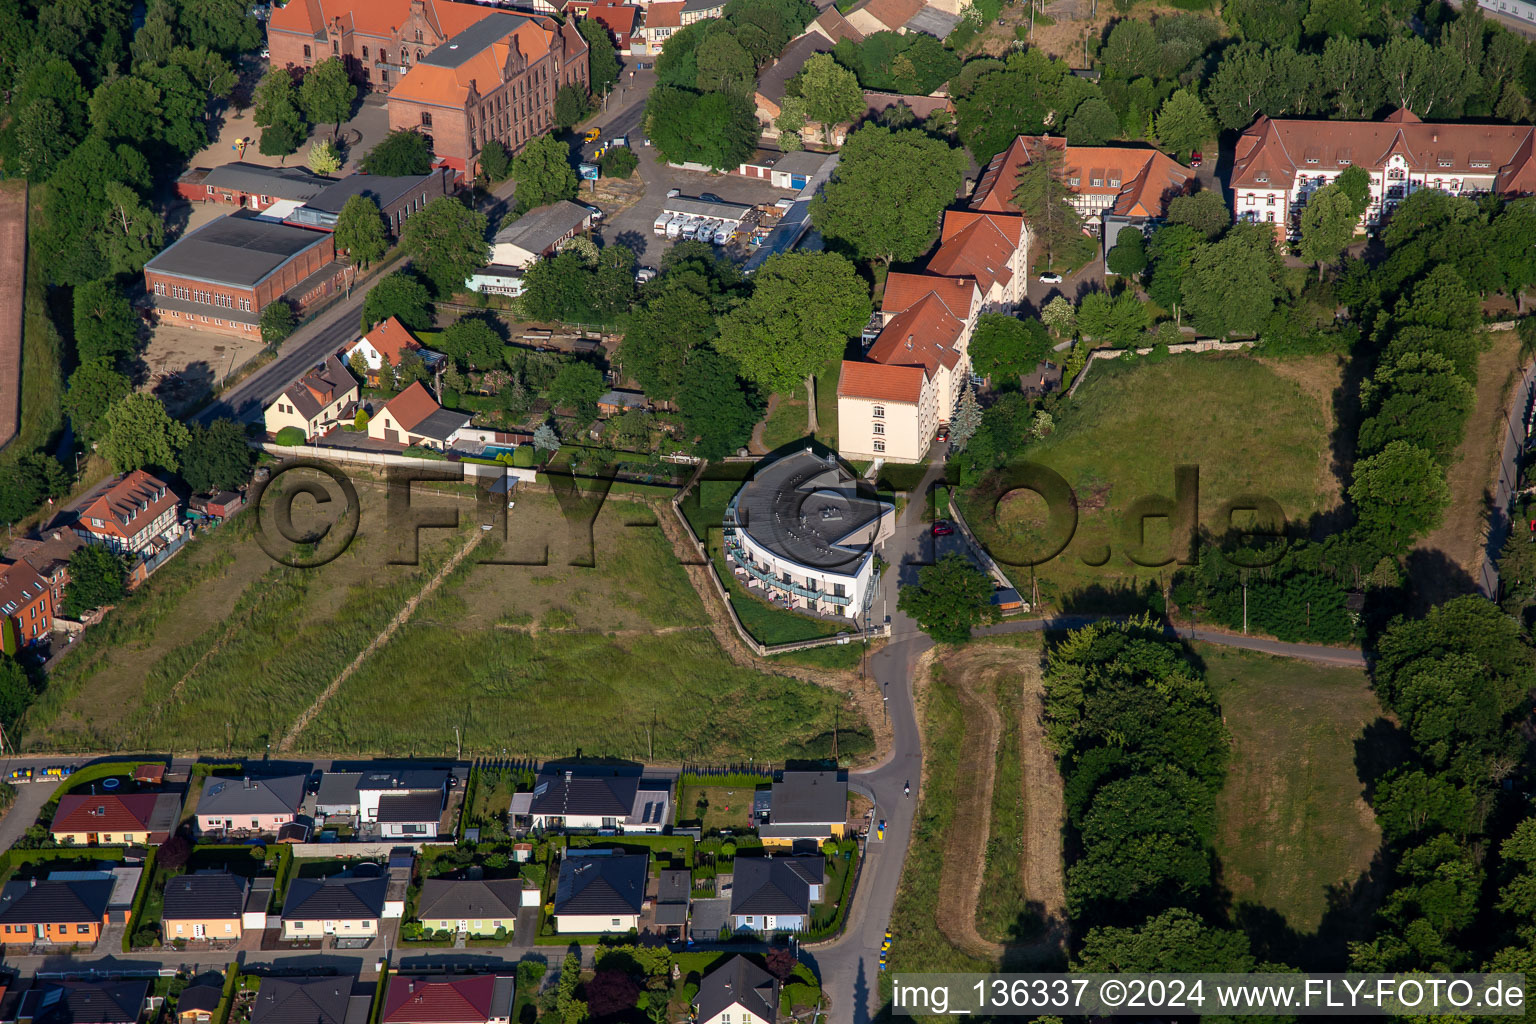 Vue aérienne de Communautés résidentielles "Deux Comtesses" pour personnes âgées ayant besoin de soins à Halberstadt dans le département Saxe-Anhalt, Allemagne